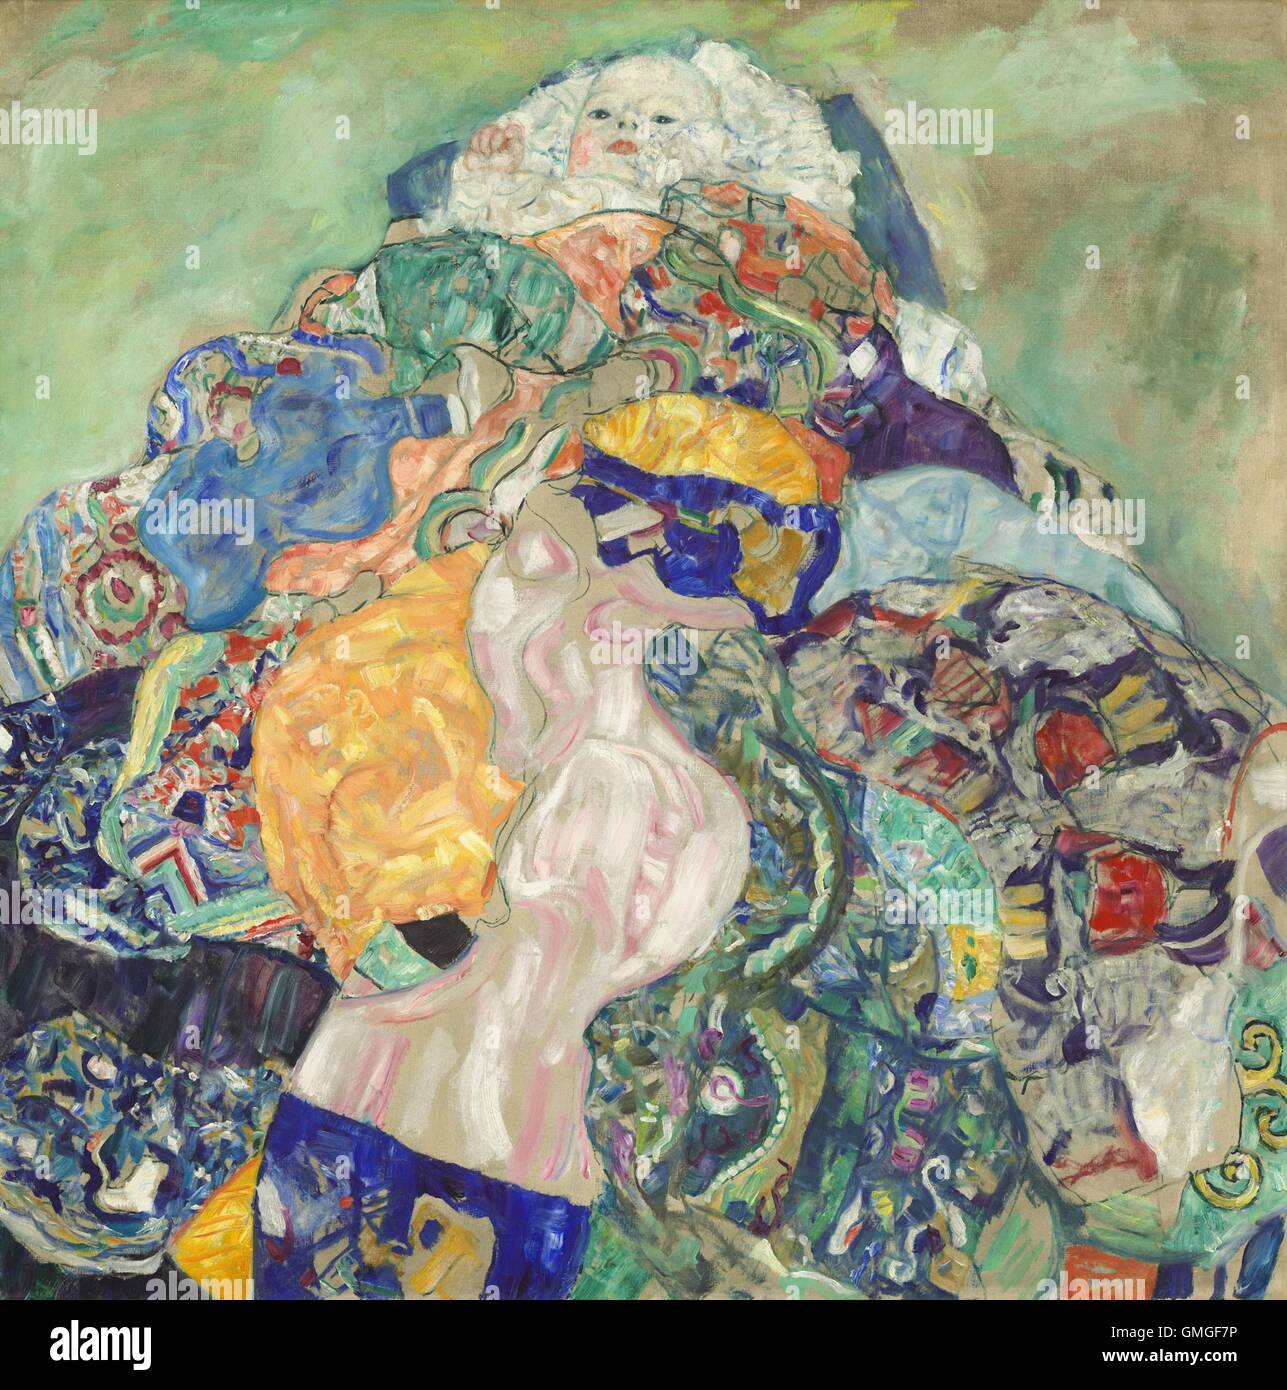 Gustav Klimt, par bébé (berceau), 1917-1918, peinture, huile sur toile. Klimt est un peintre symboliste Autrichien et un des membres les plus éminents du mouvement de sécession de Vienne avant la Première Guerre mondiale. Cette œuvre tardive, reprend des thèmes de travaux publics (BSLOC 2016 comple 6 95) Banque D'Images